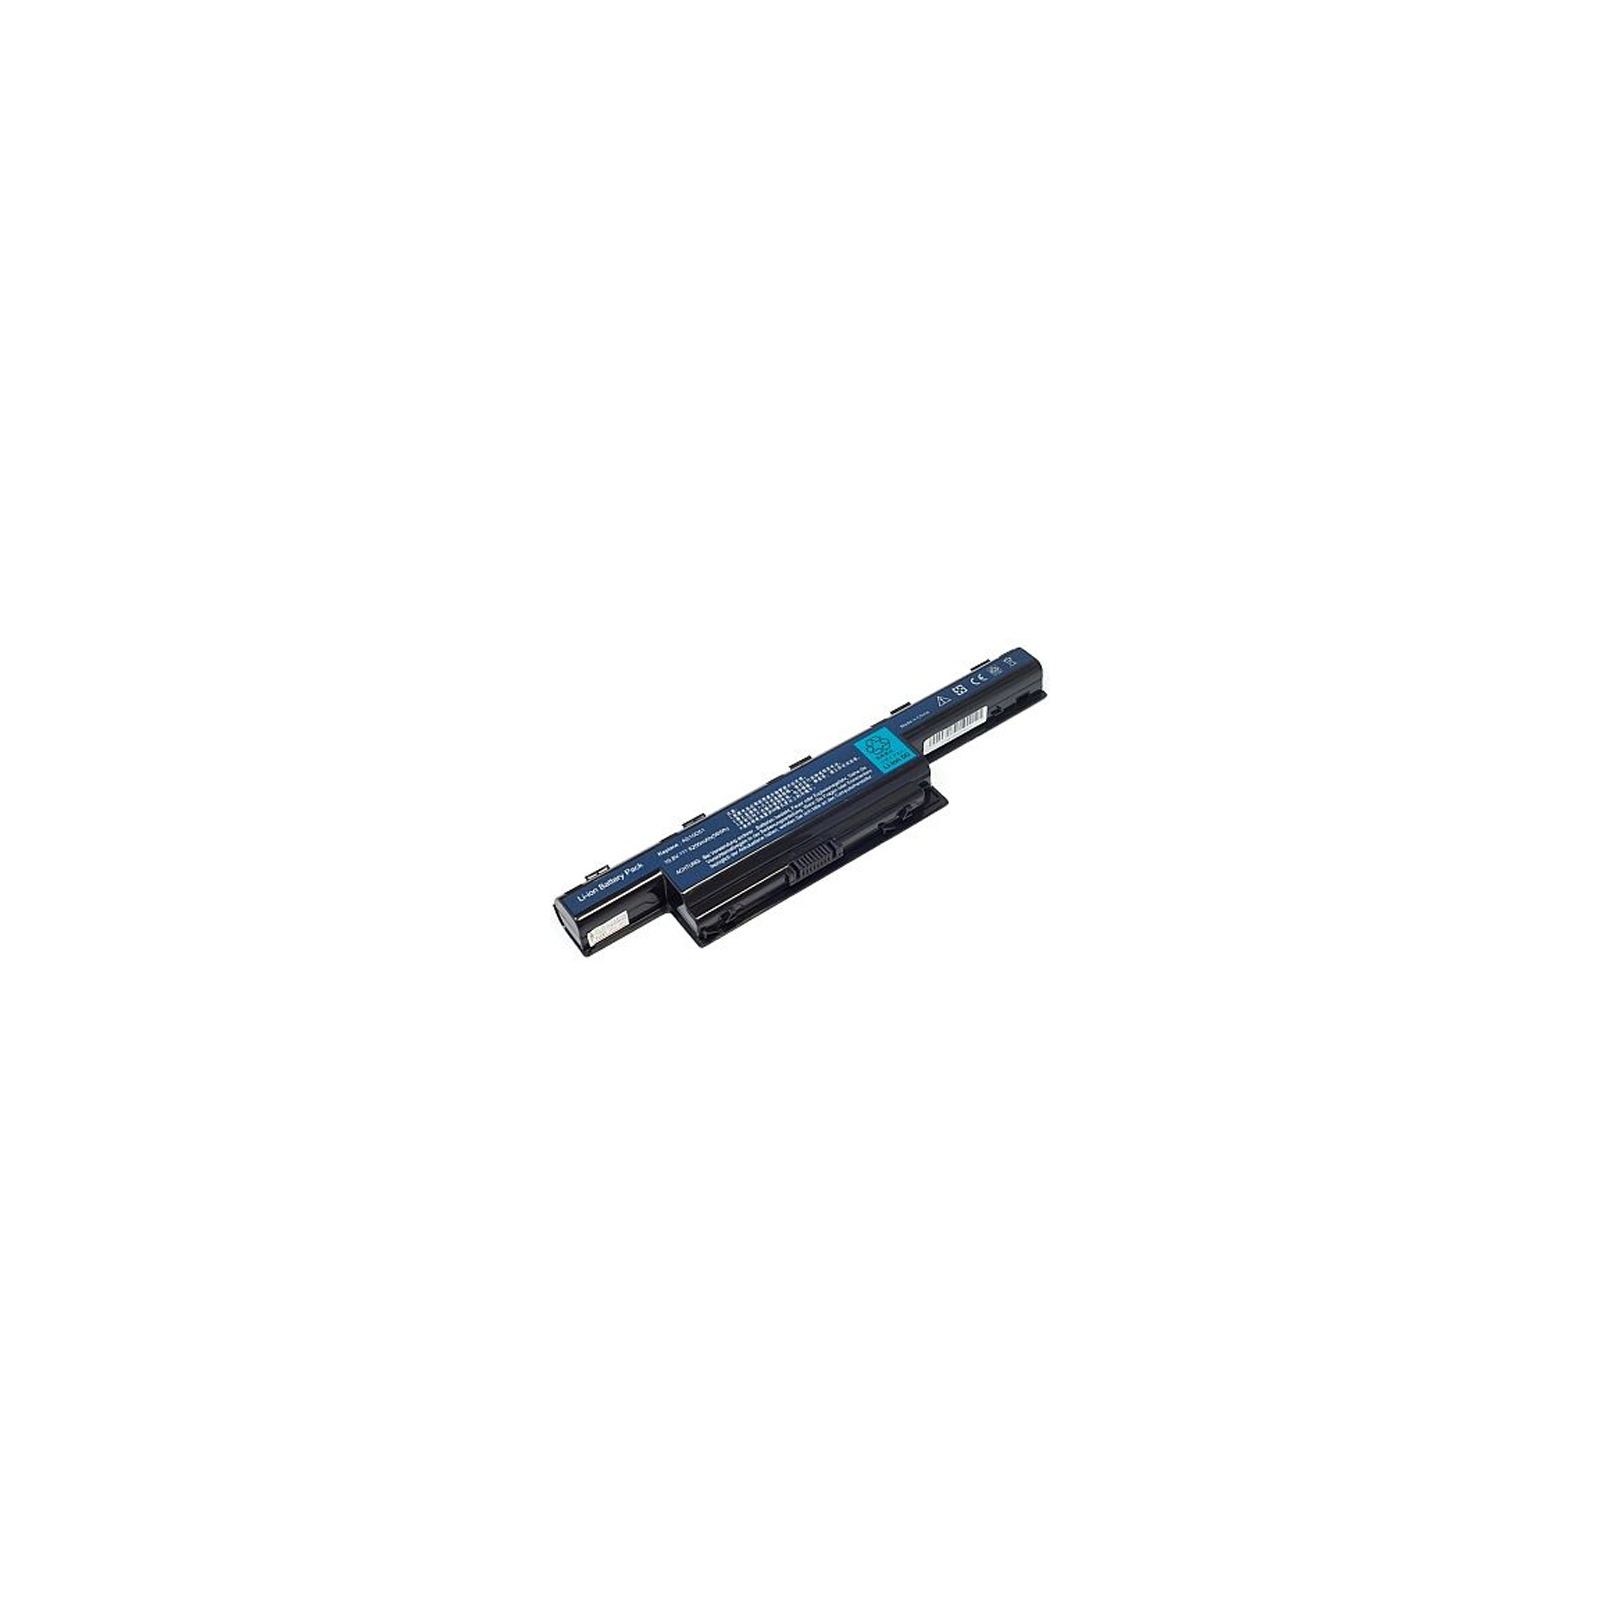 Аккумулятор для ноутбука ACER Aspire 4551 (AS10D41, GY5300LH) 10.8V 5200mAh PowerPlant (NB00000028)